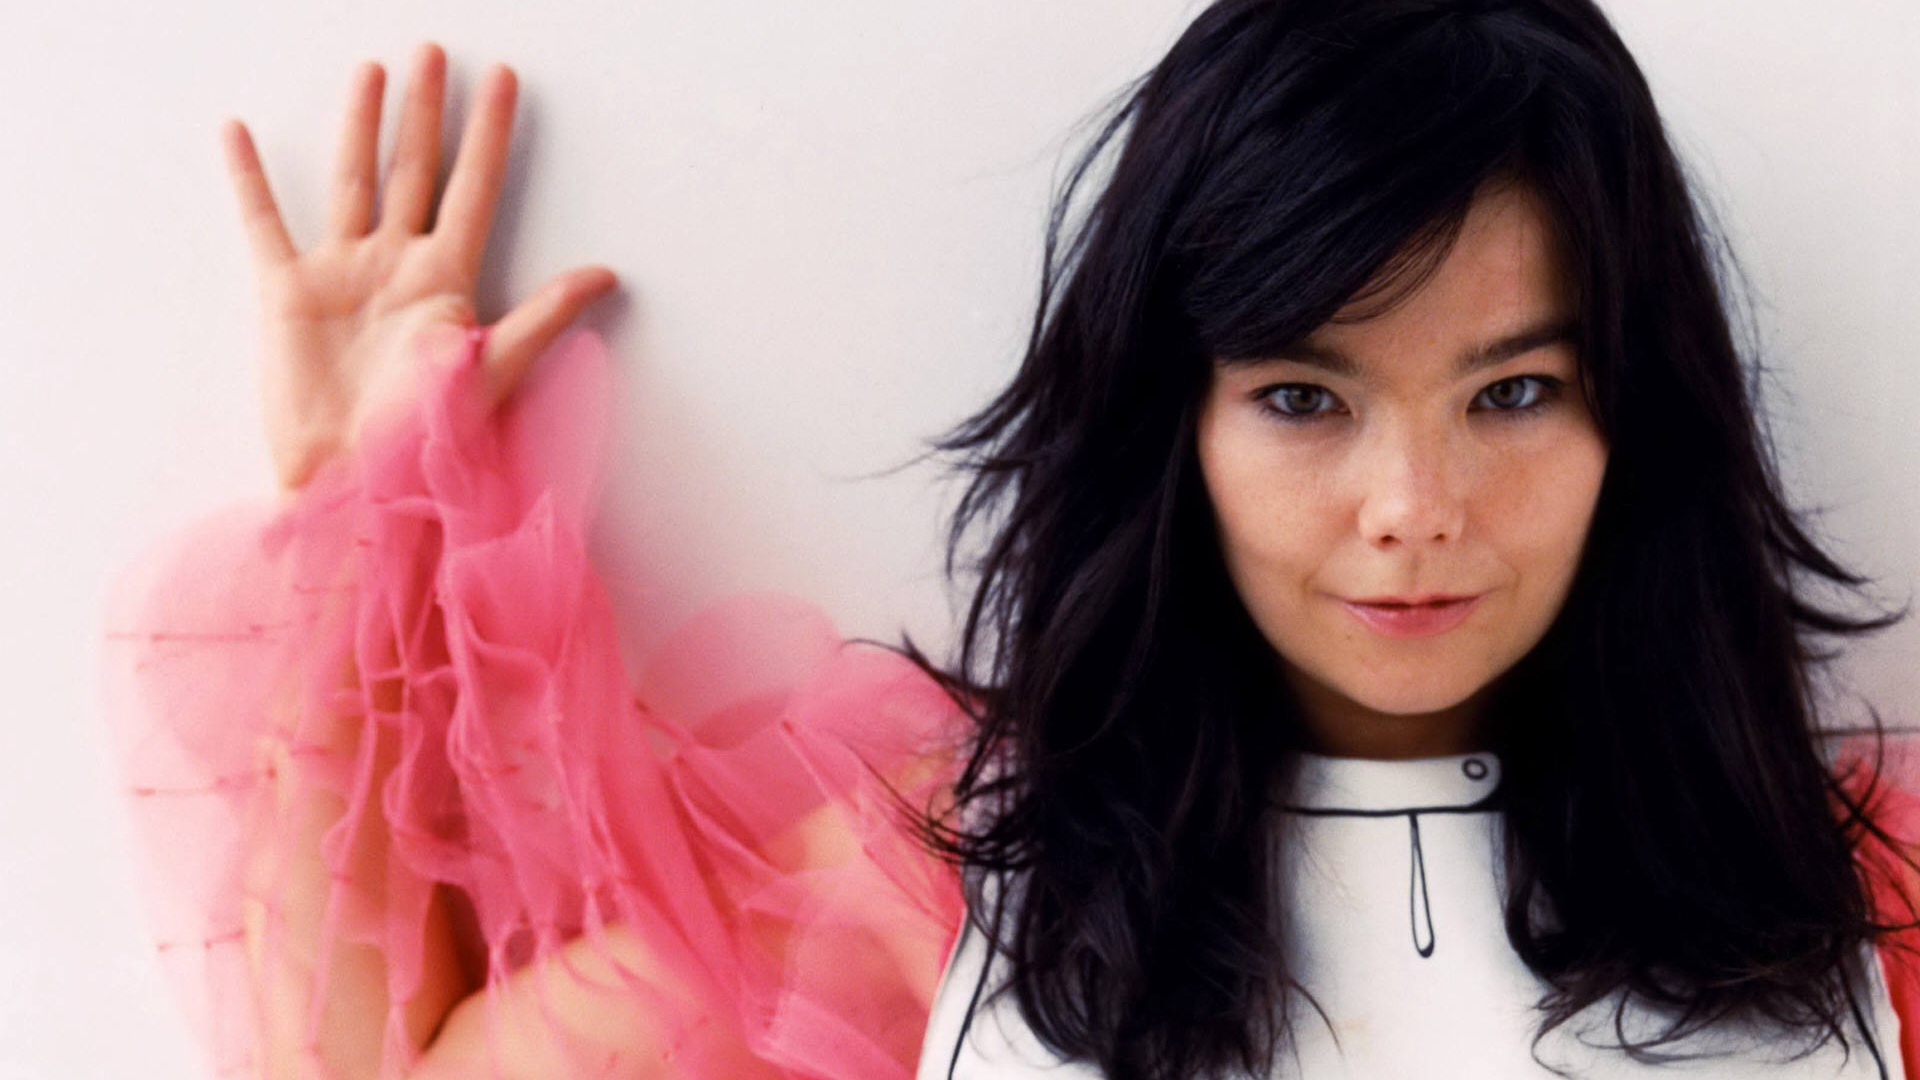 Los mejores fondos de pantalla de Björk para la pantalla del teléfono